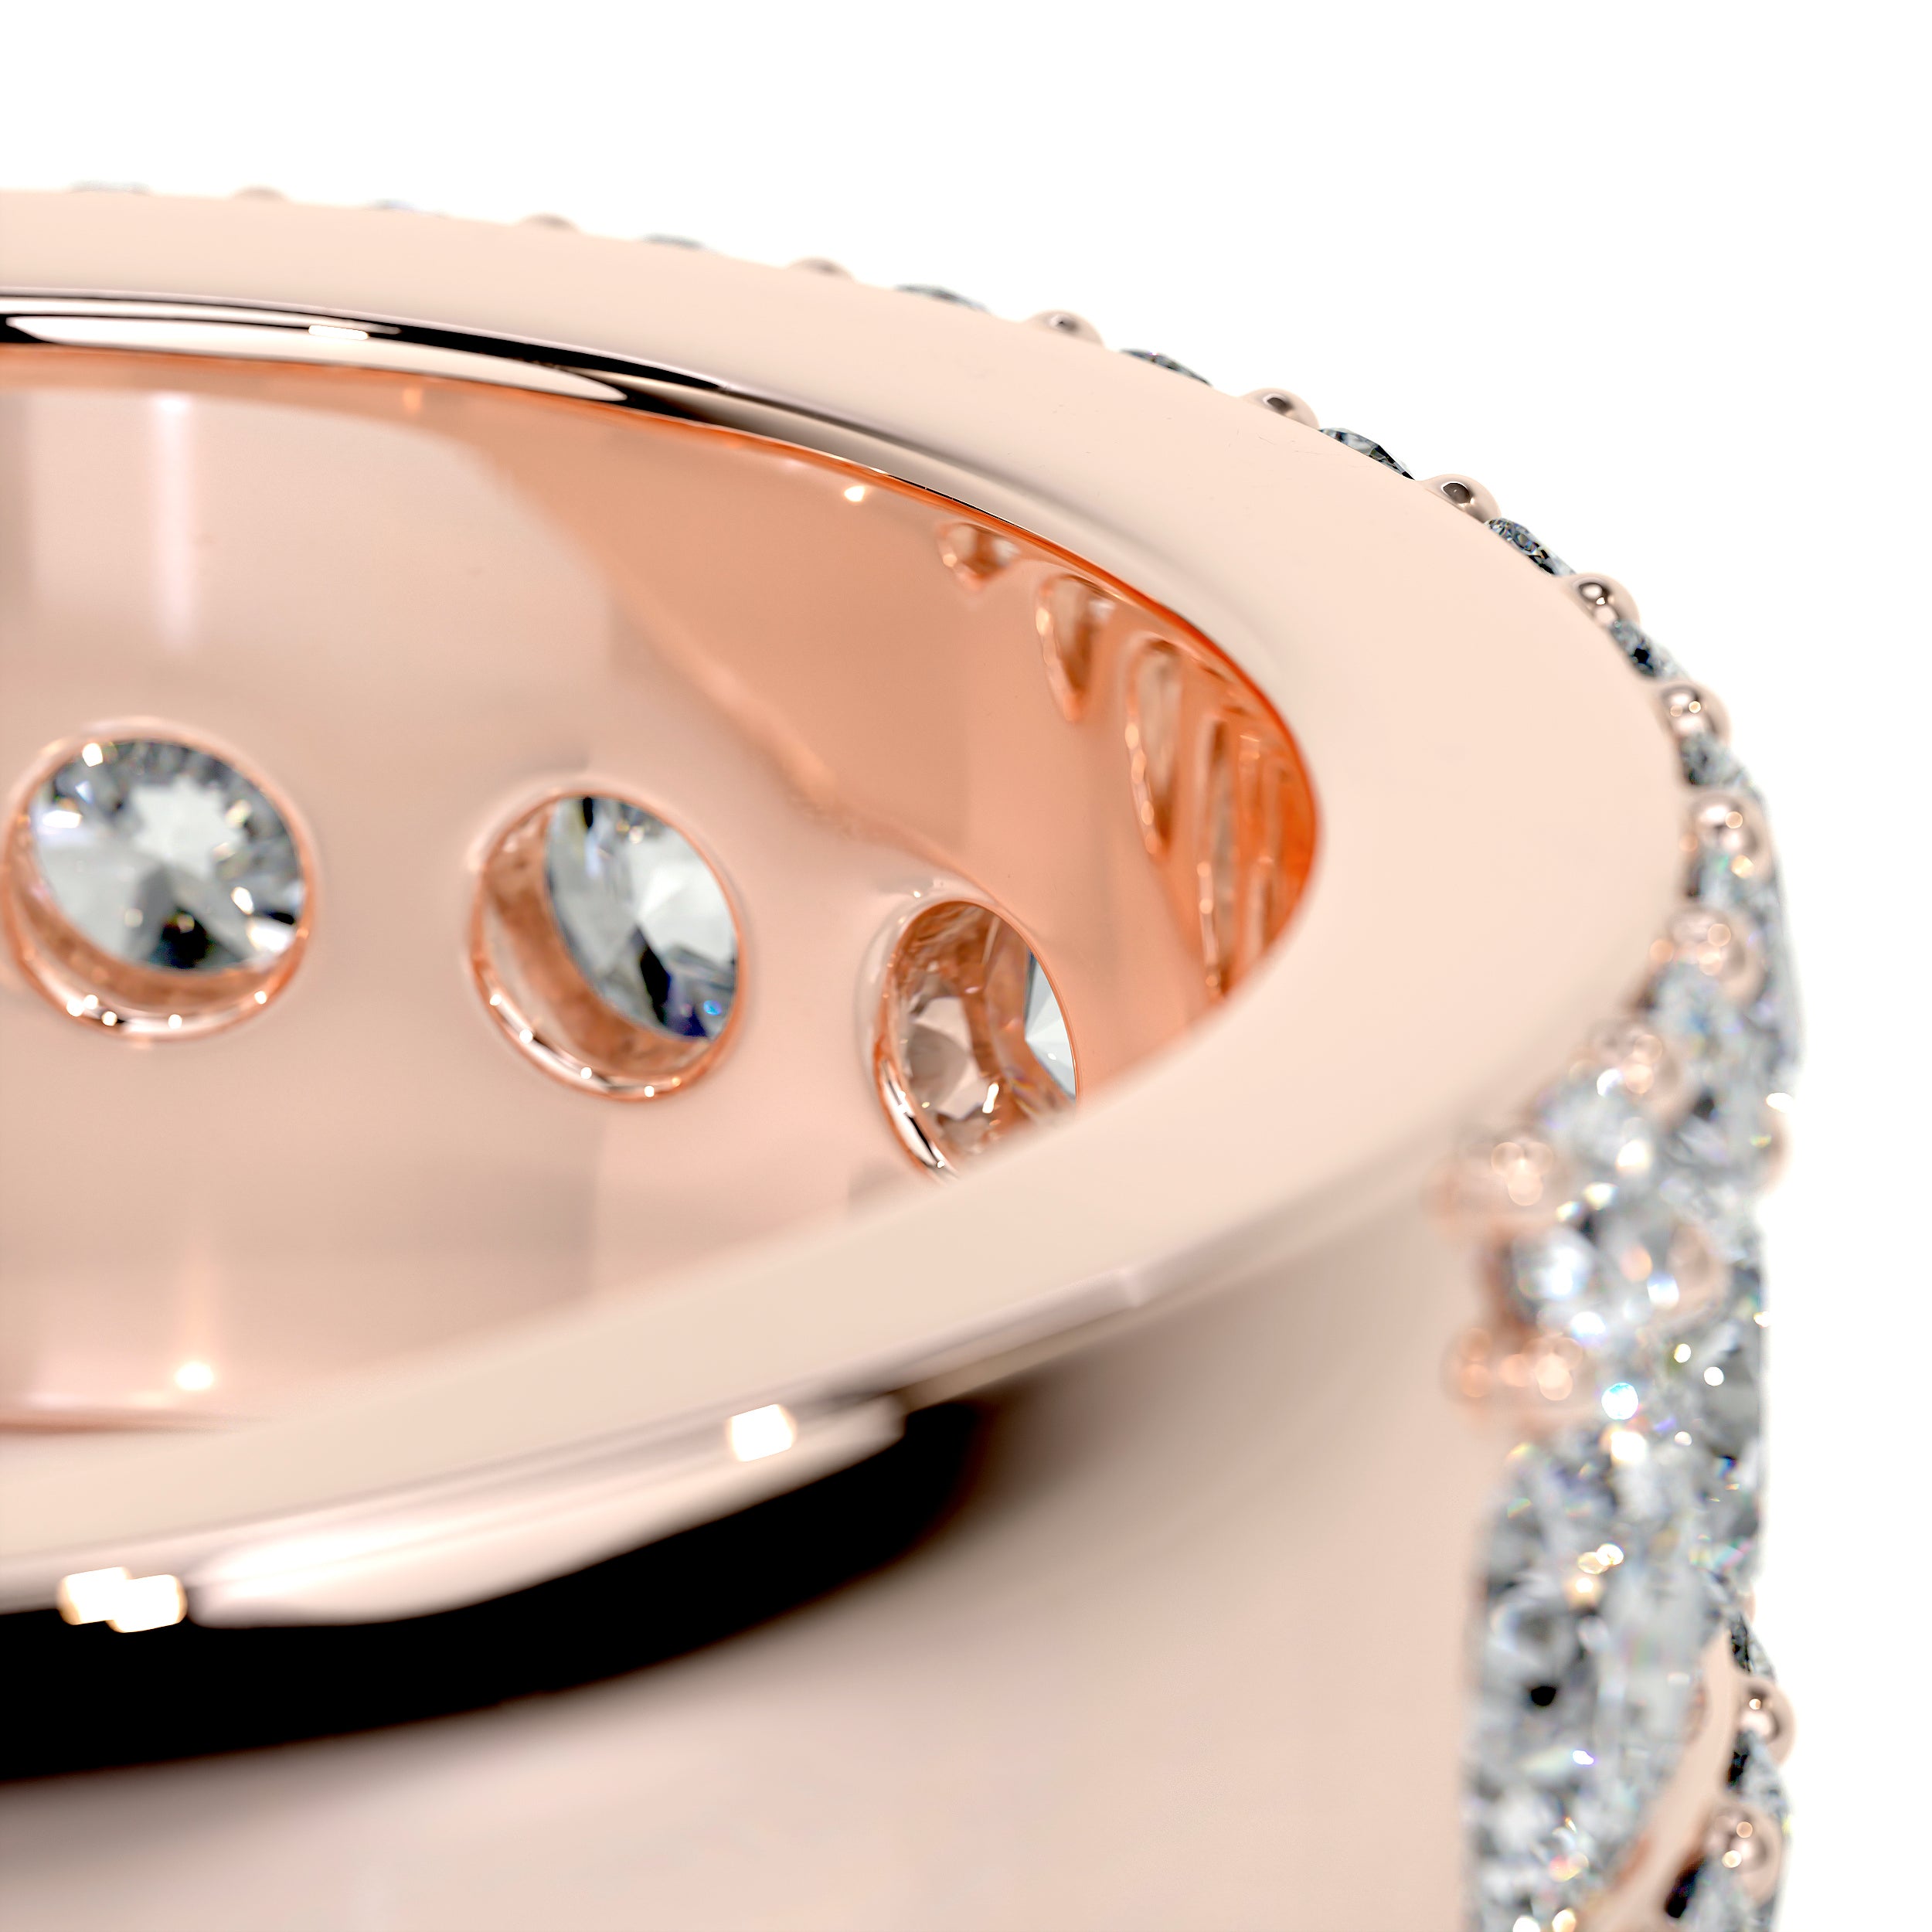 Nia Diamond Wedding Ring   (2 Carat) -14K Rose Gold